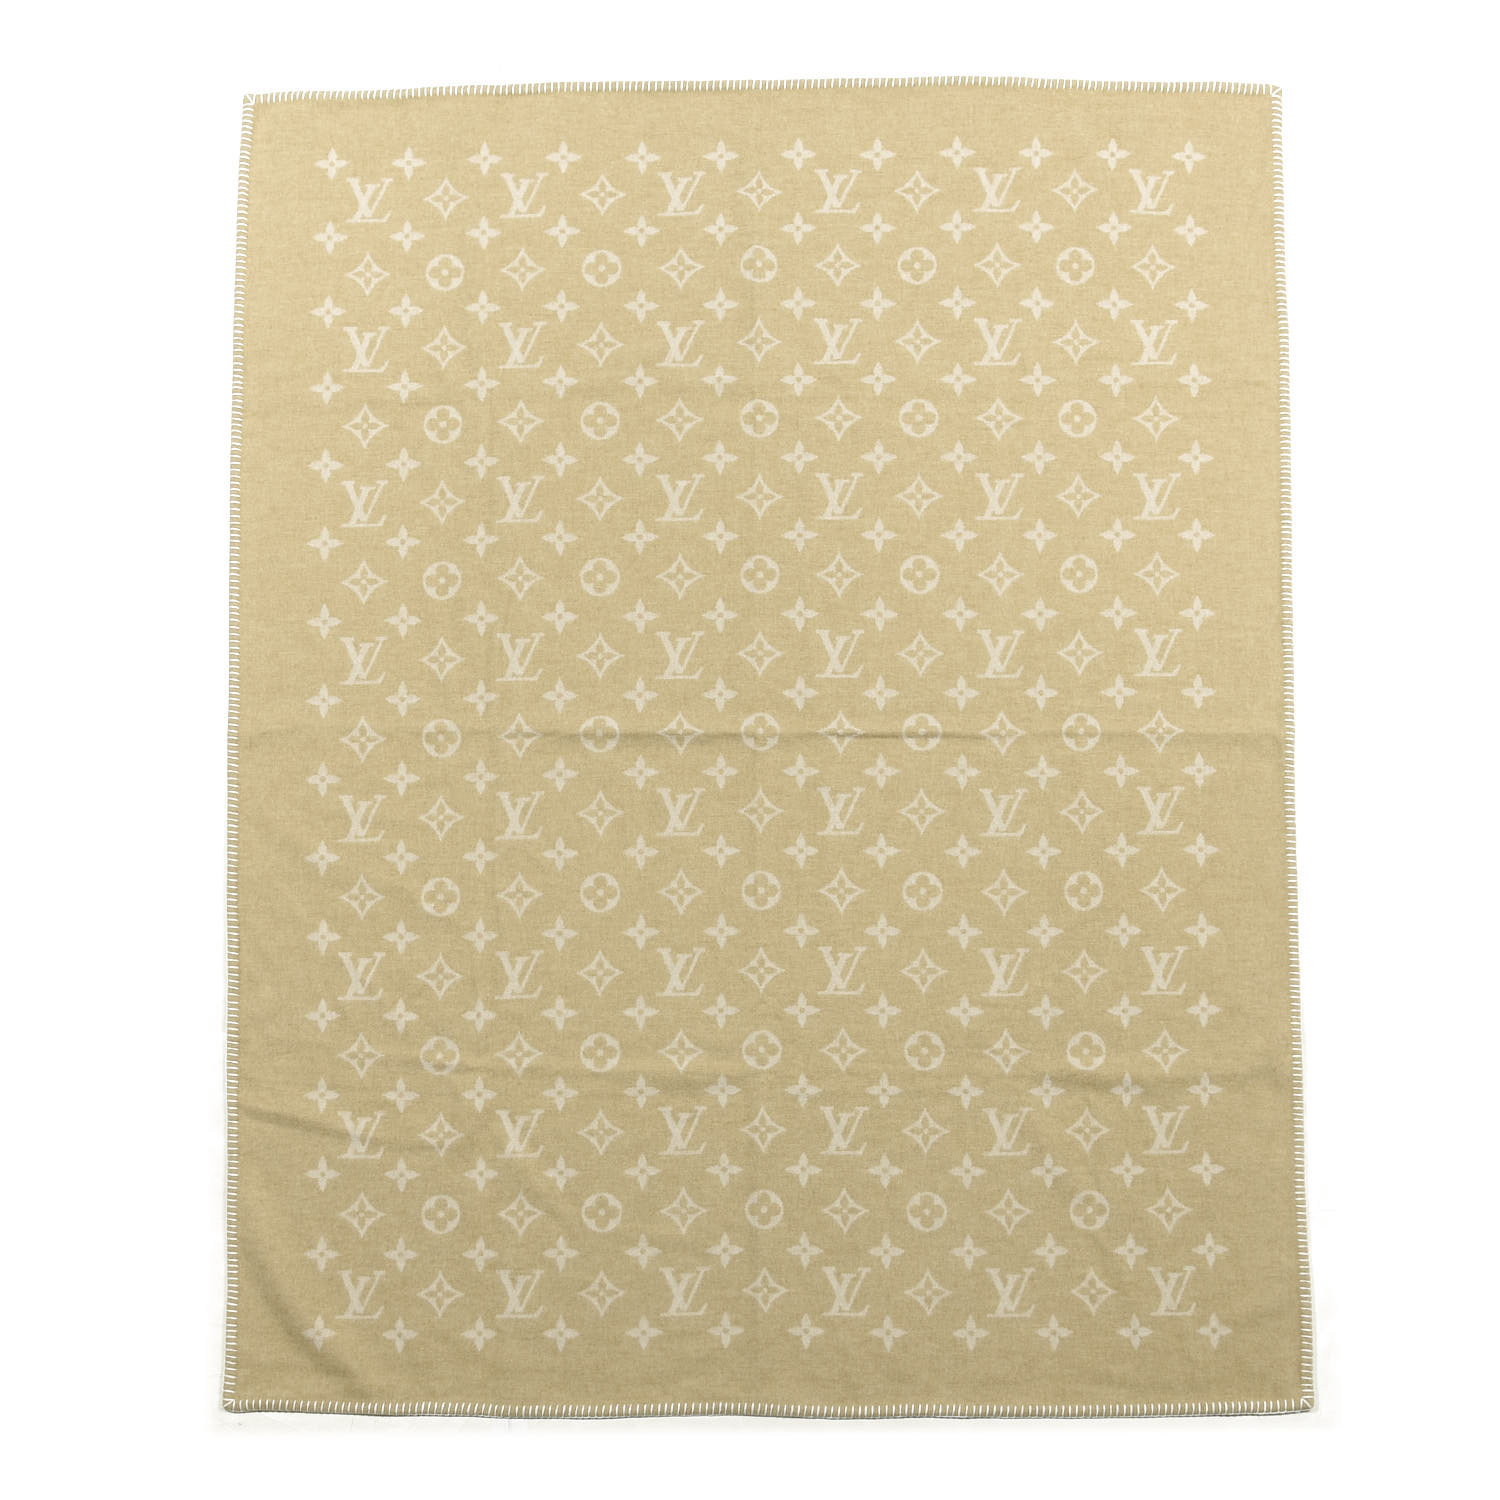 LOUIS VUITTON Wool Cashmere Monogram Blanket Beige 676177 | FASHIONPHILE